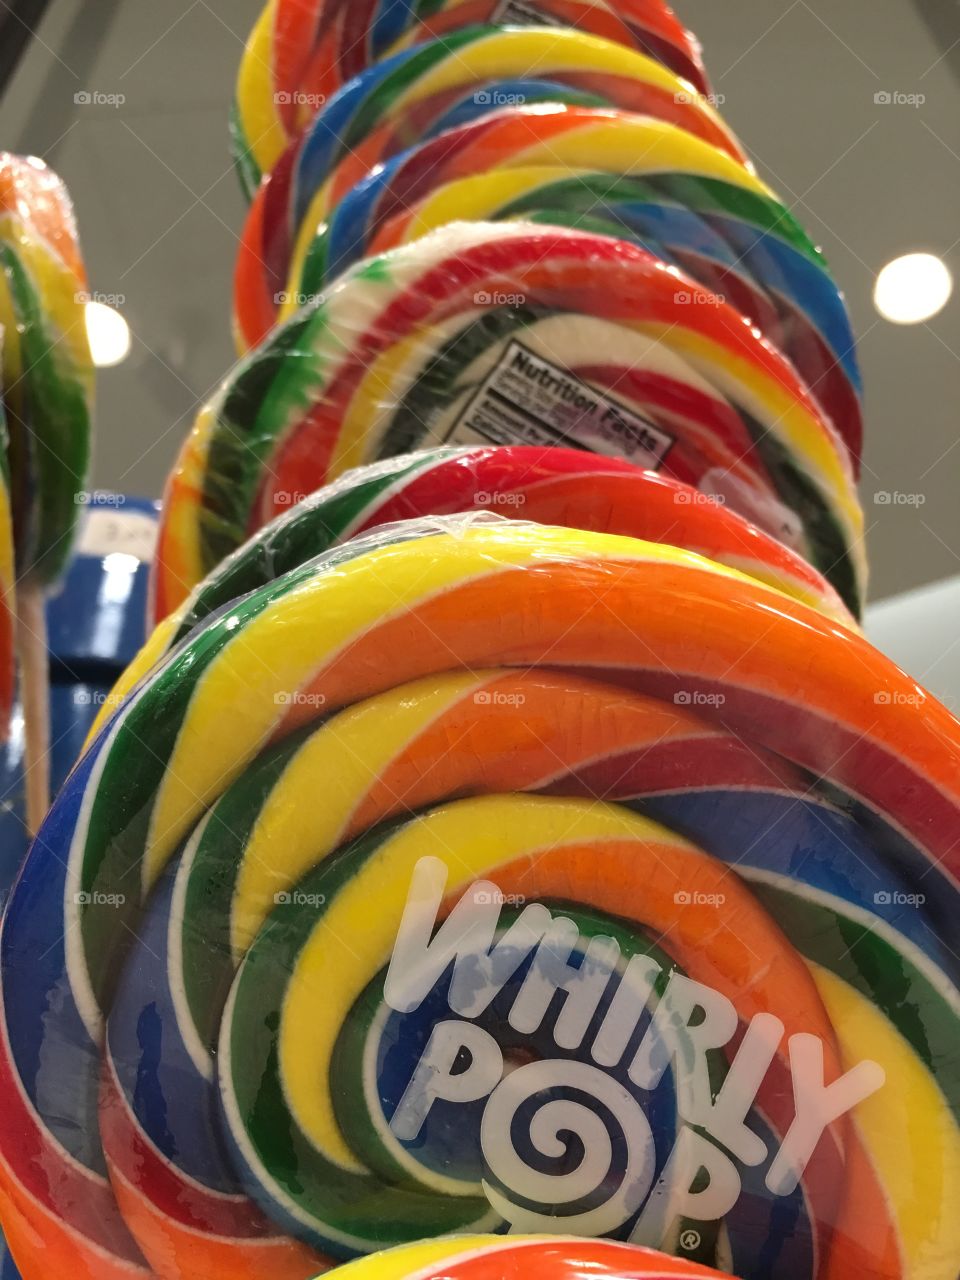 Lollipops 